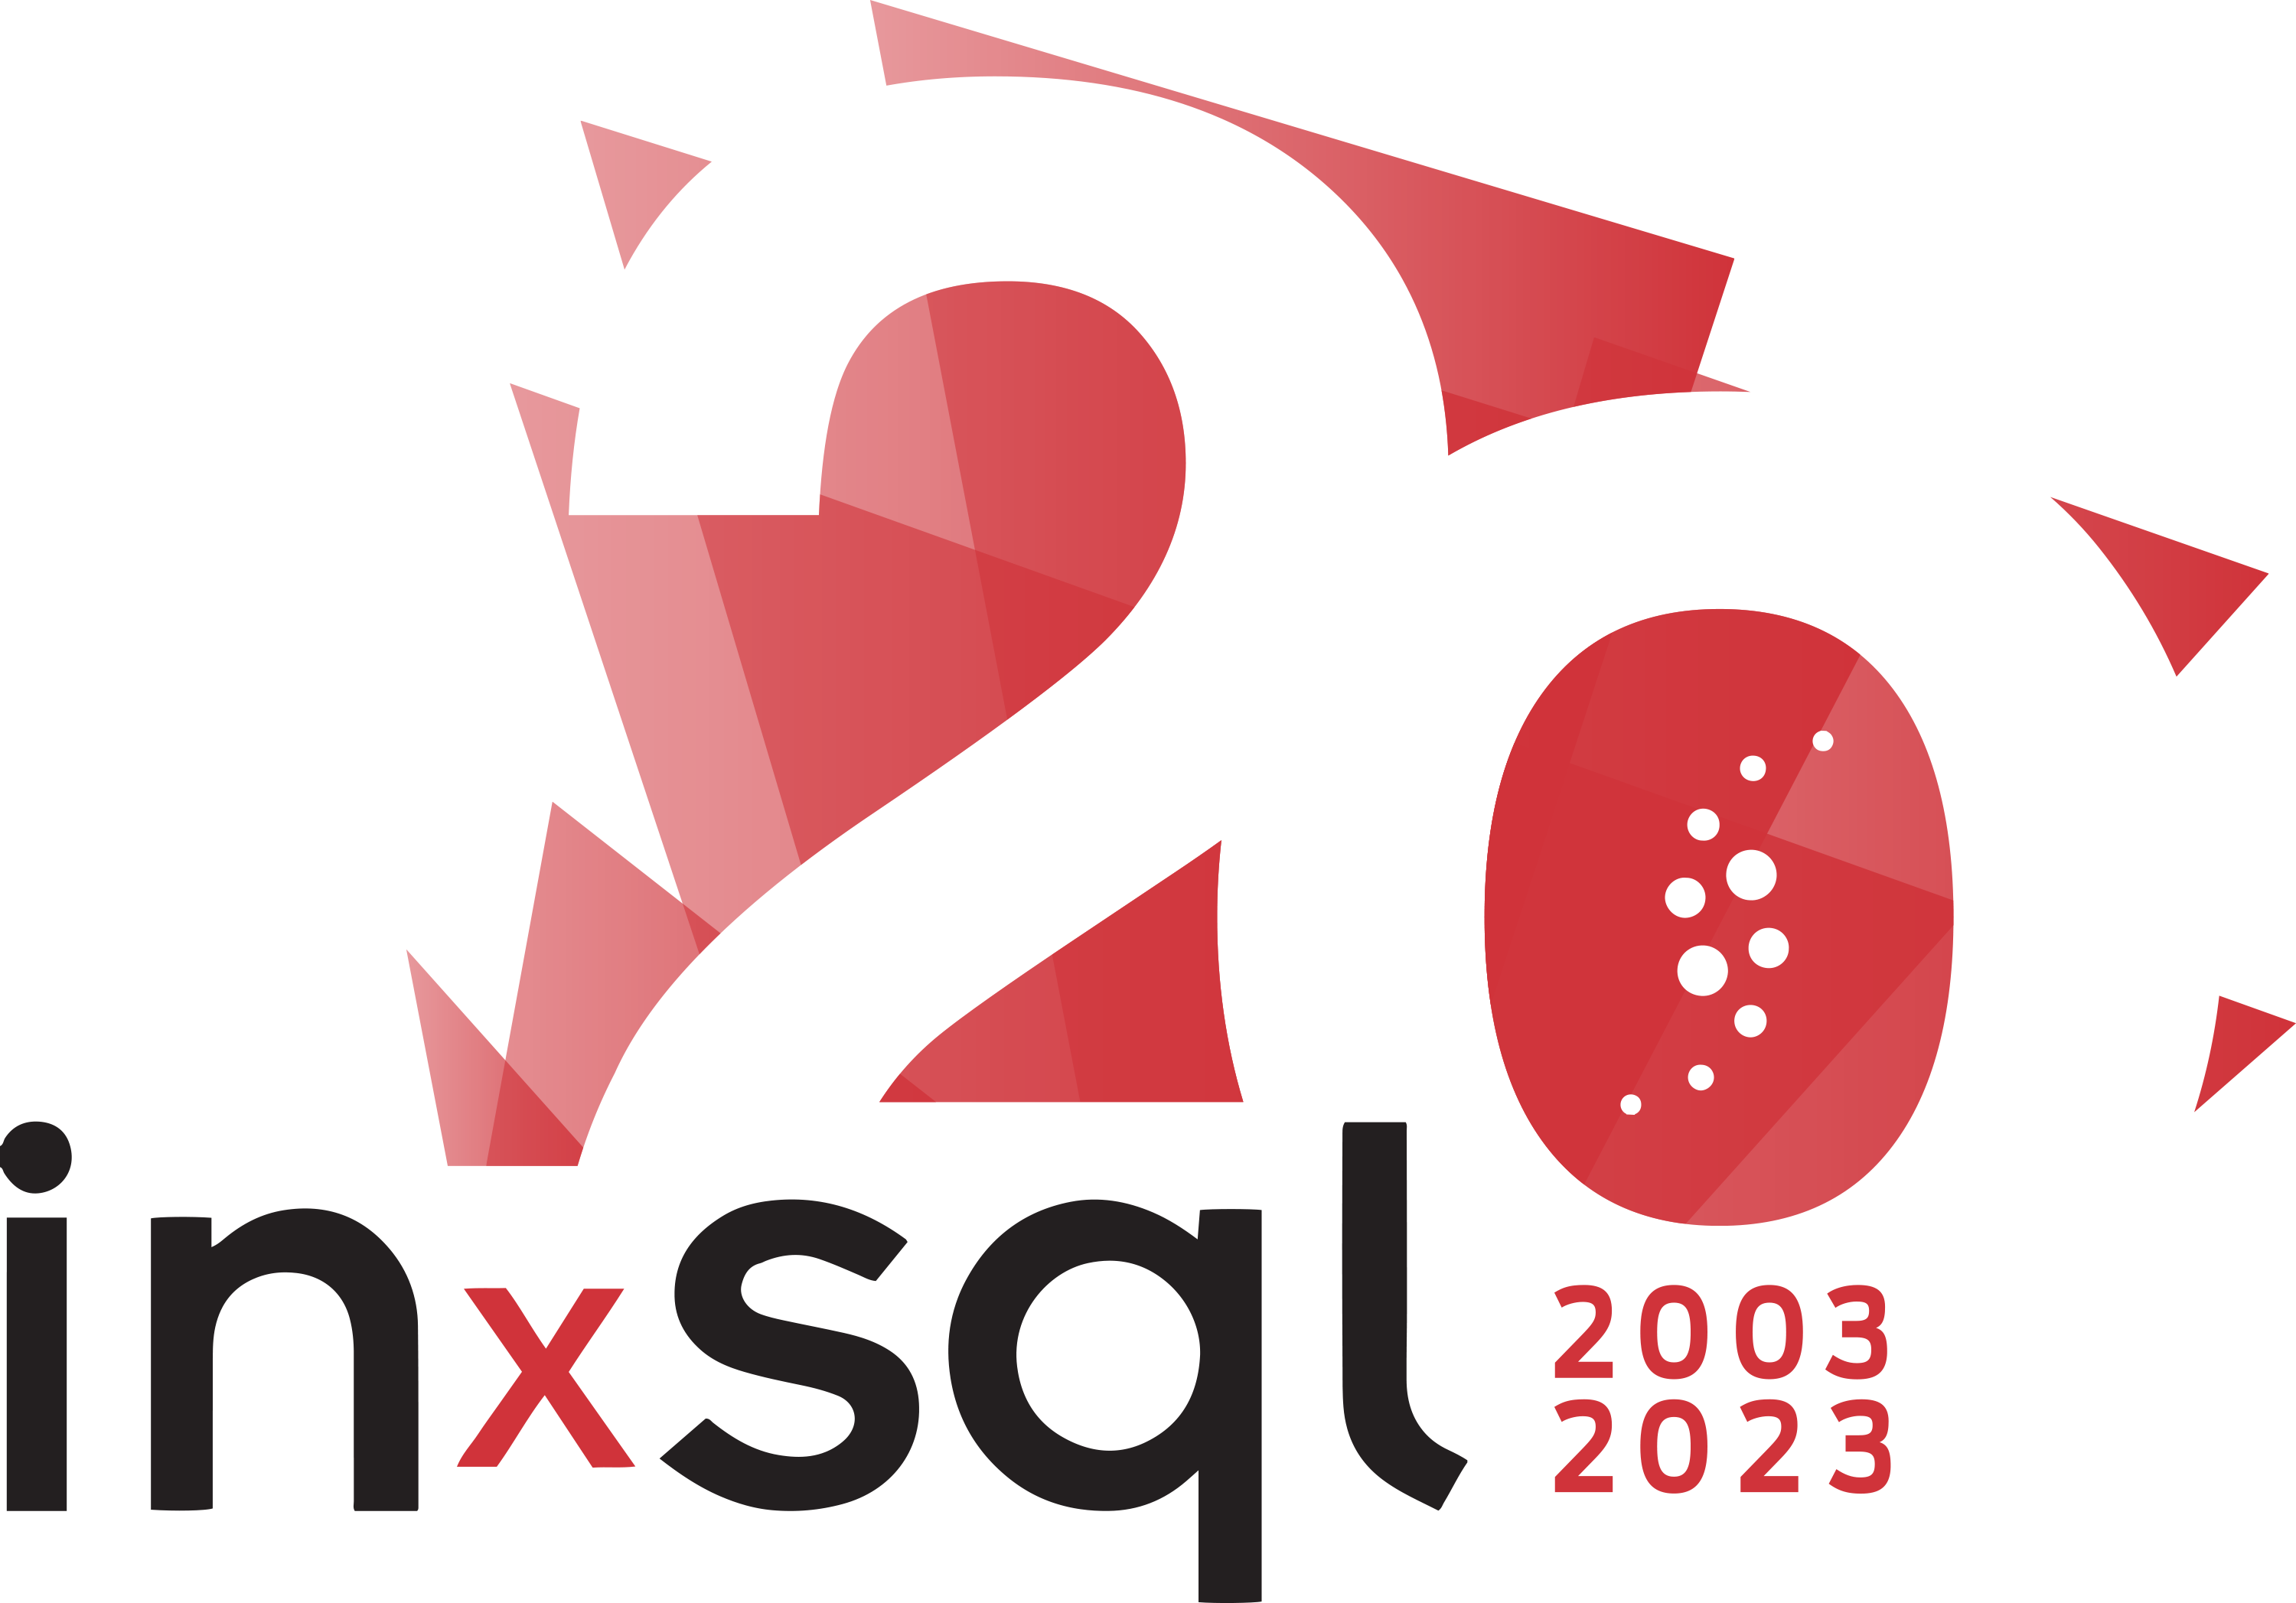 INxSQL Logo